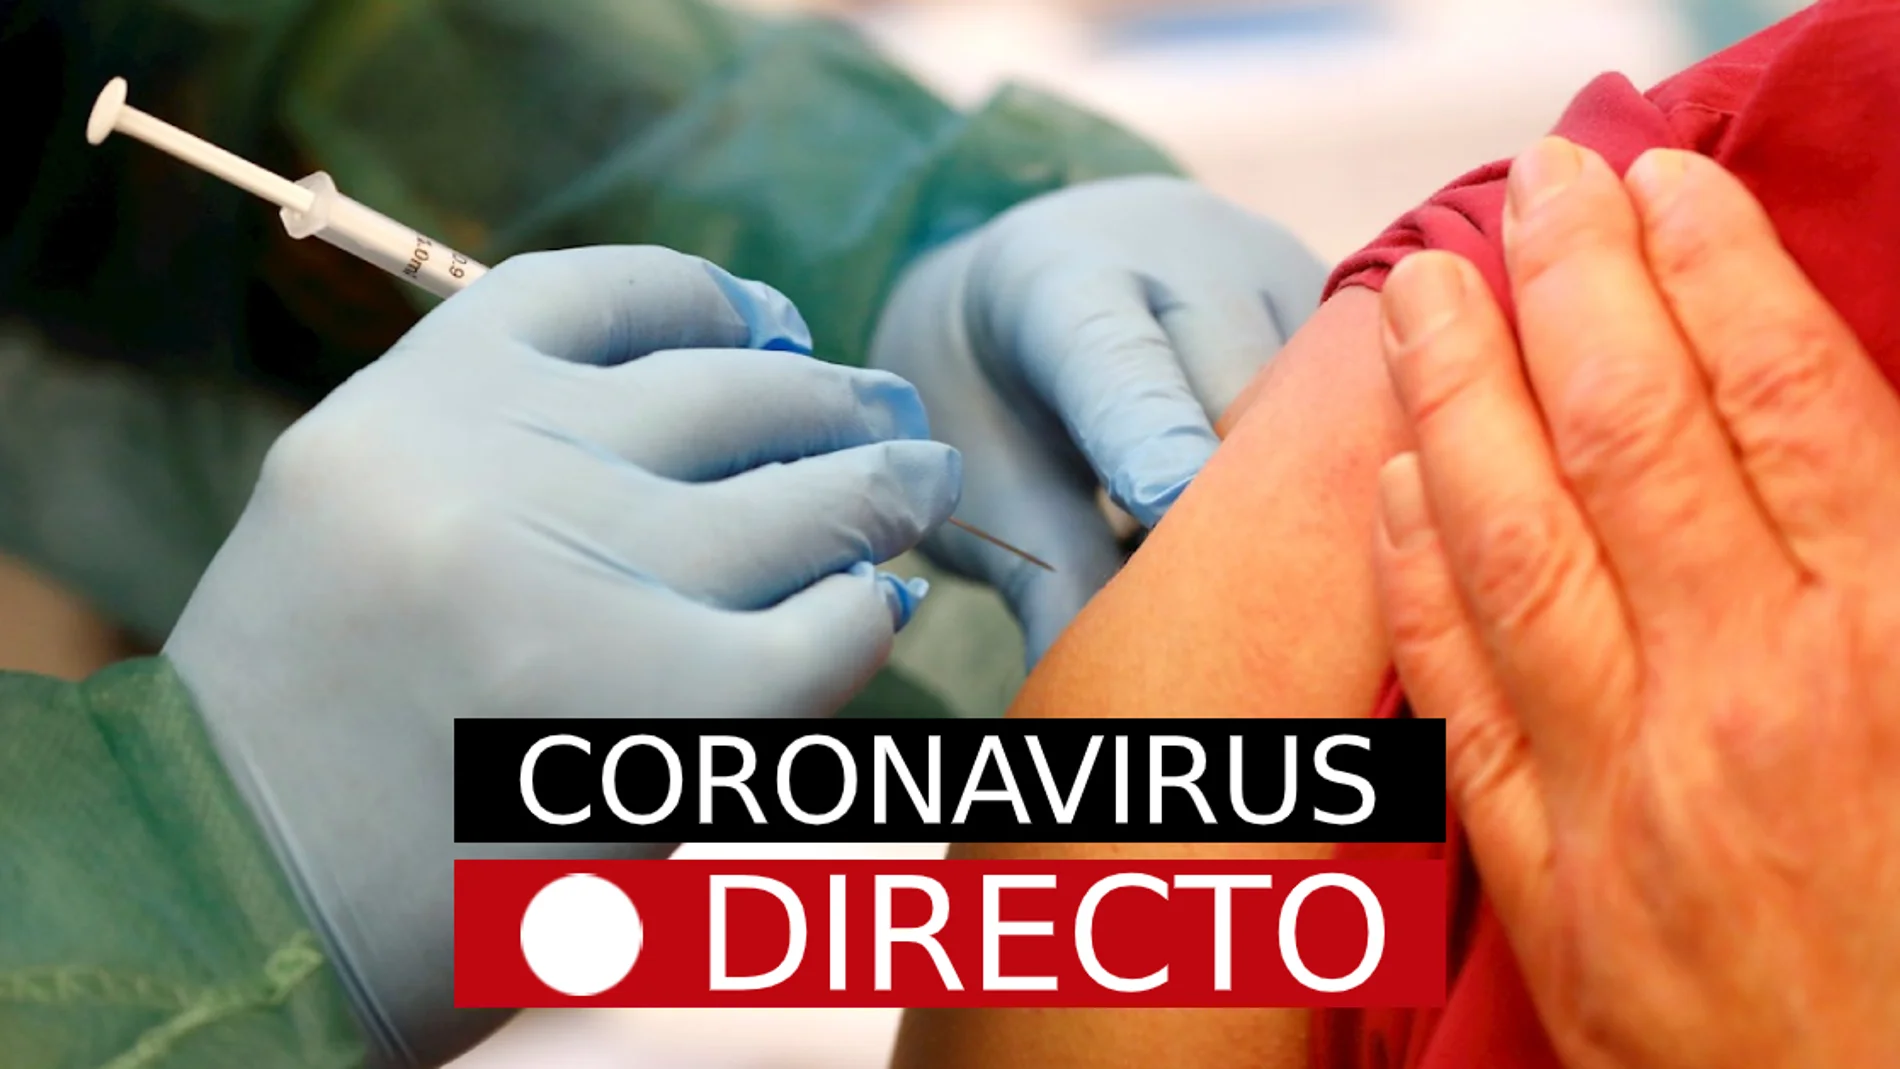 Vacuna del coronavirus